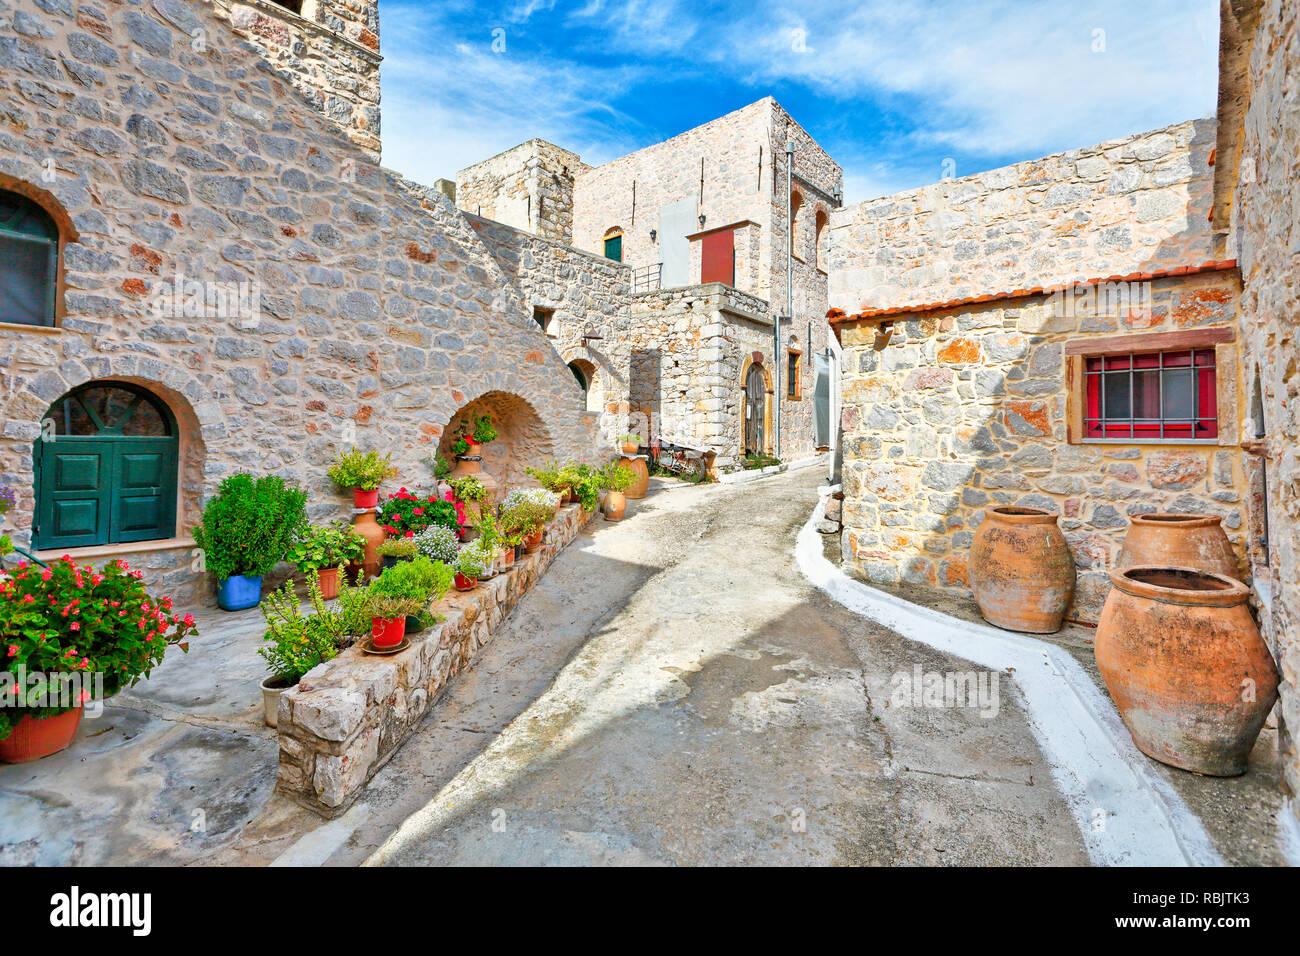 Maisons traditionnelles dans le village médiéval de Vessa de mastic sur l'île de Chios, Grèce Banque D'Images